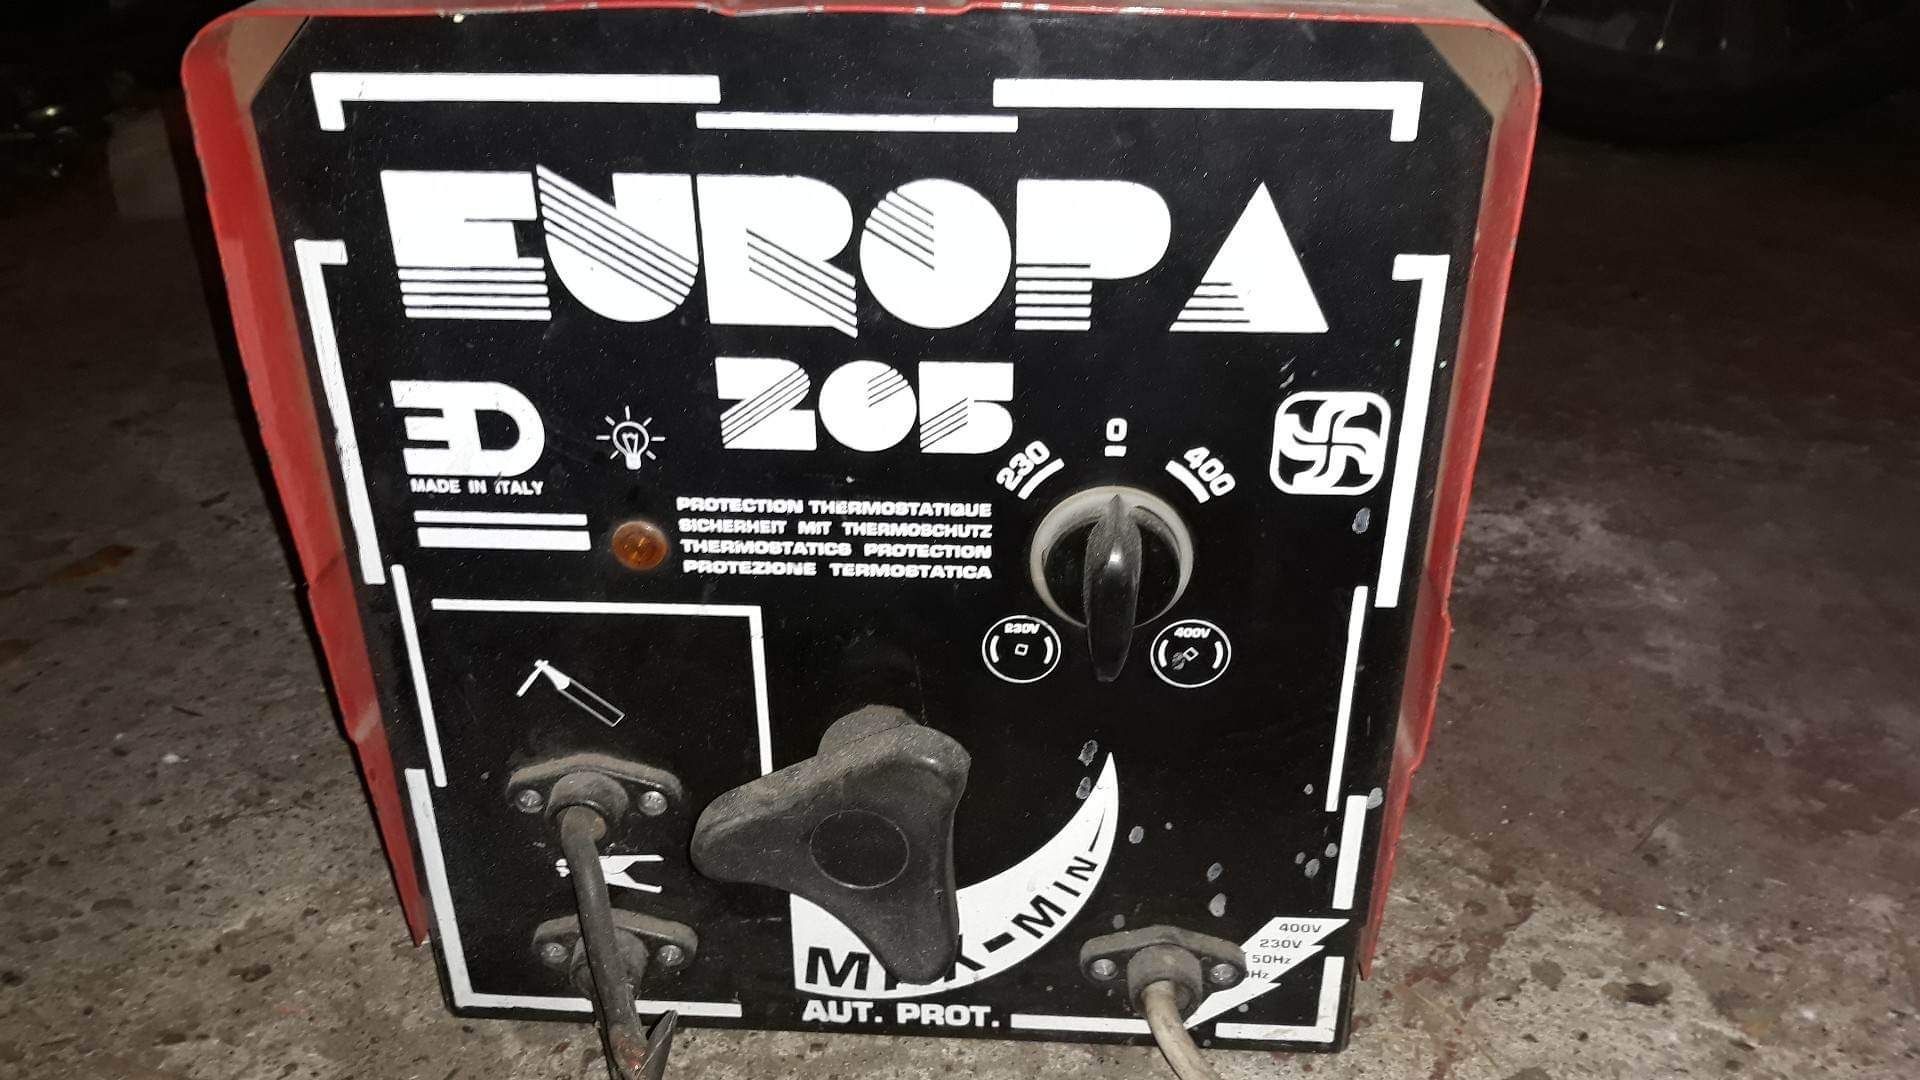 Spawarka Veba Europa 205